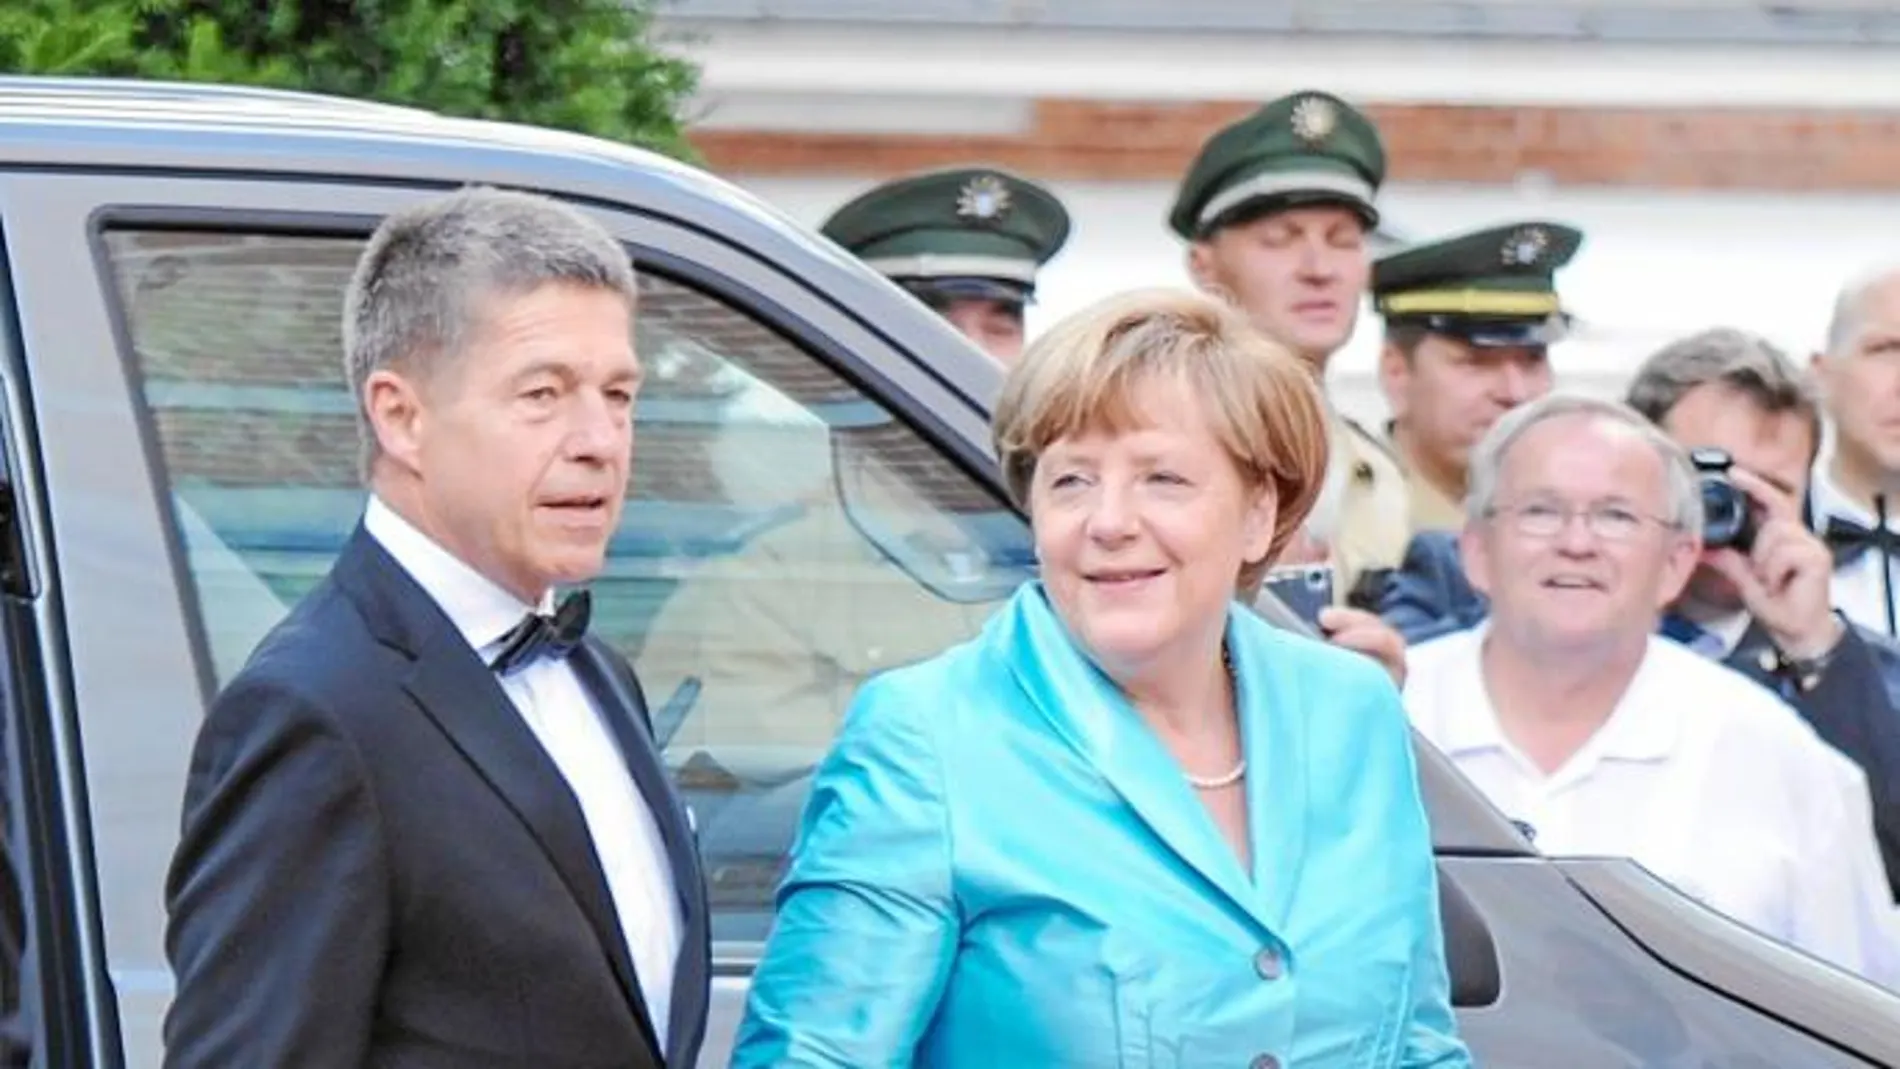 Merkel es fiel a su estilo. Repite corte de vestido año tras año